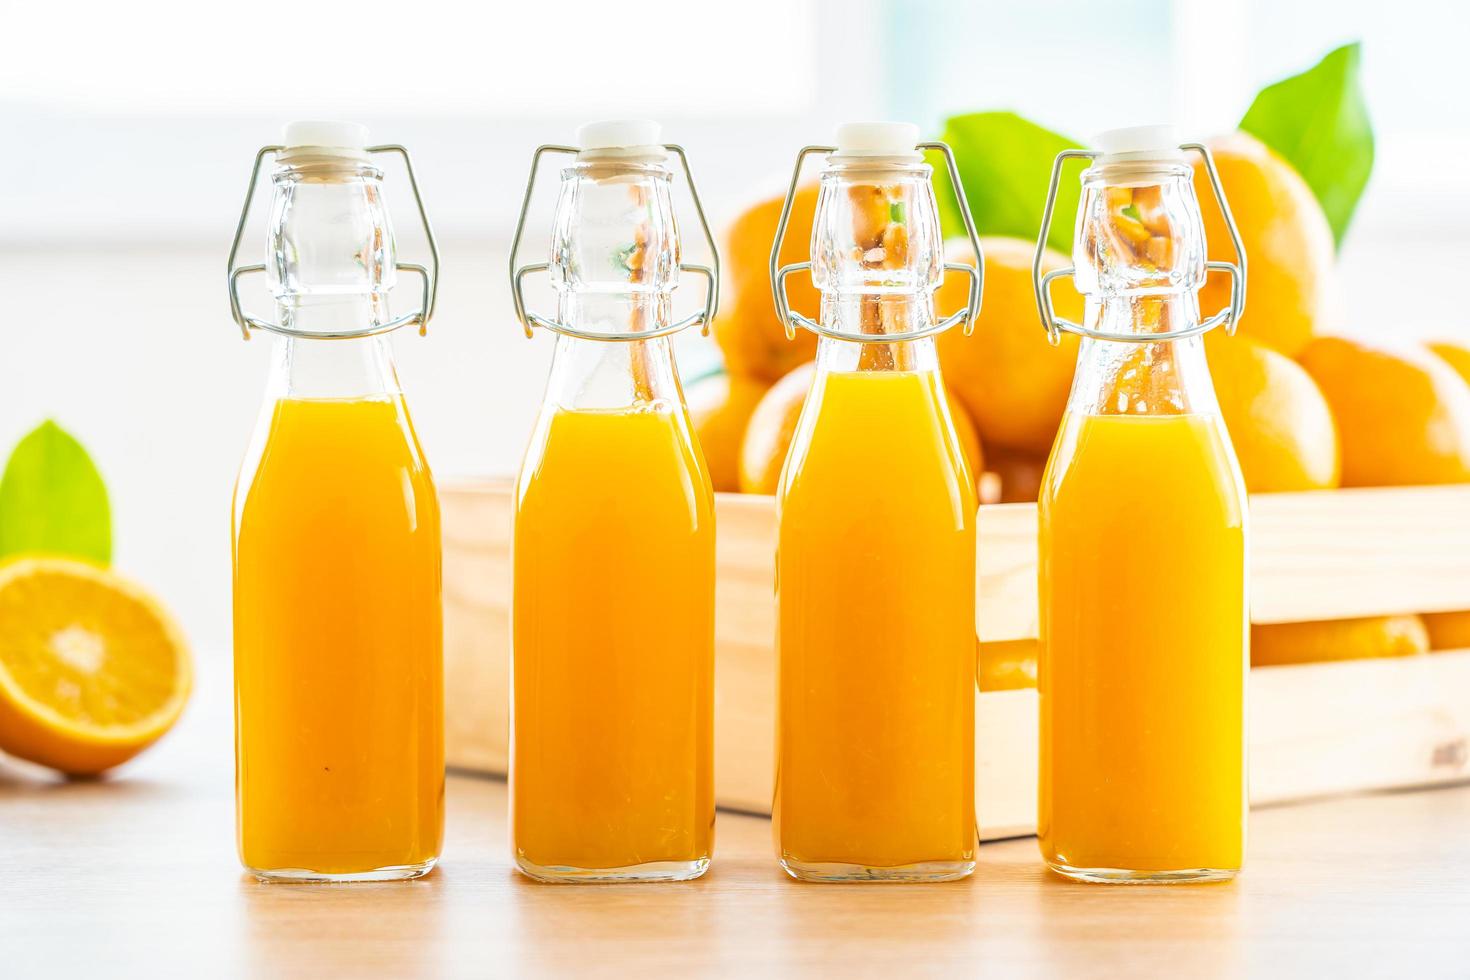 Fresh orange juice and oranges photo